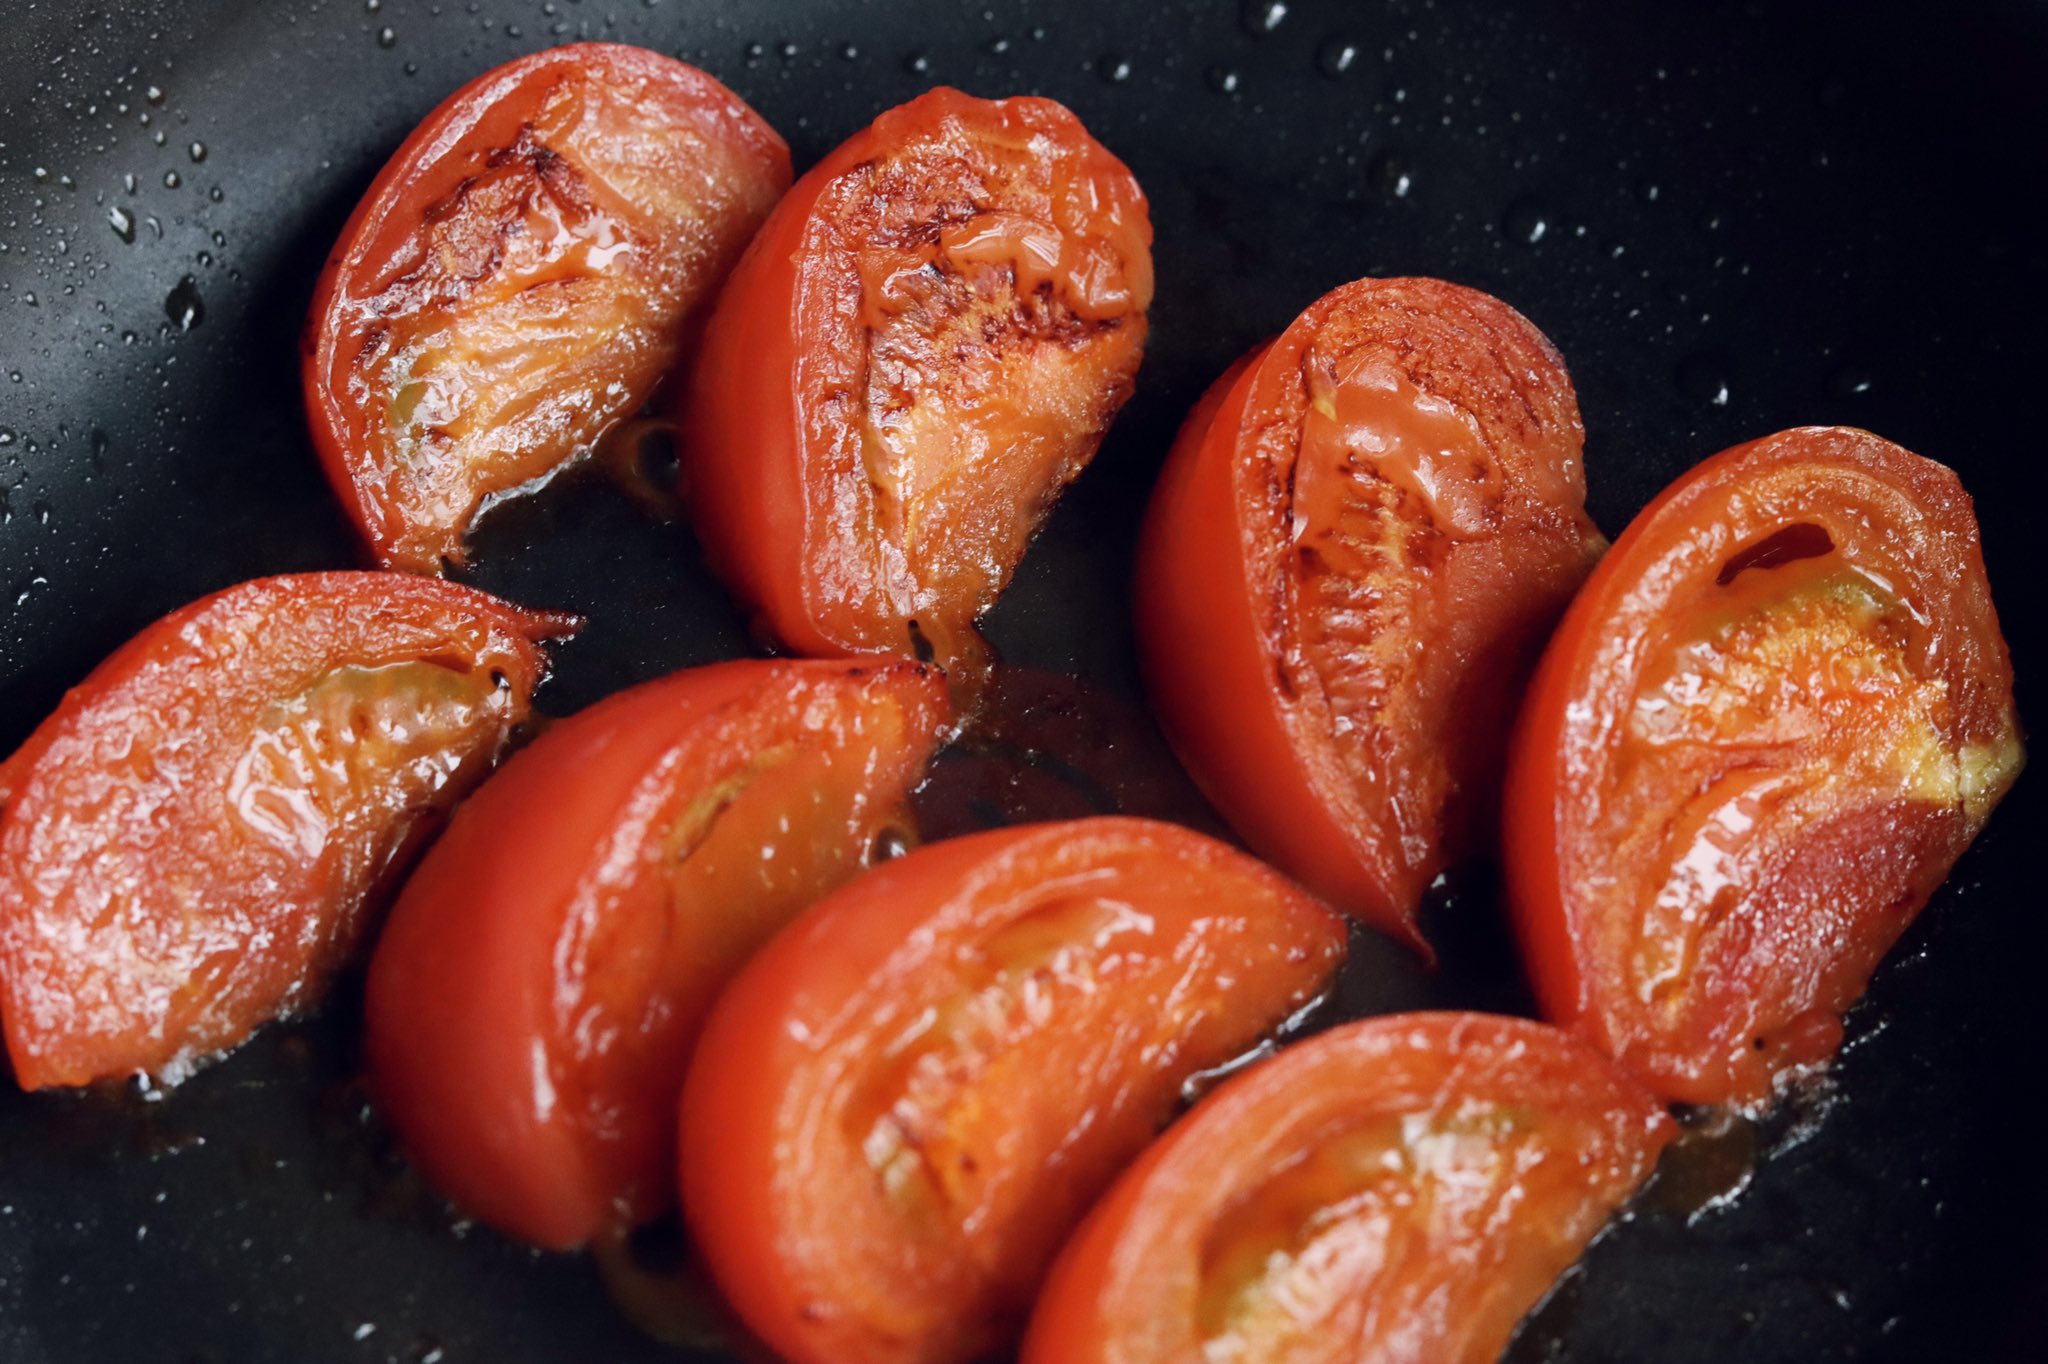 トマト好きさん必見 とっても美味しそうなトマトの食べ方 話題の画像プラス